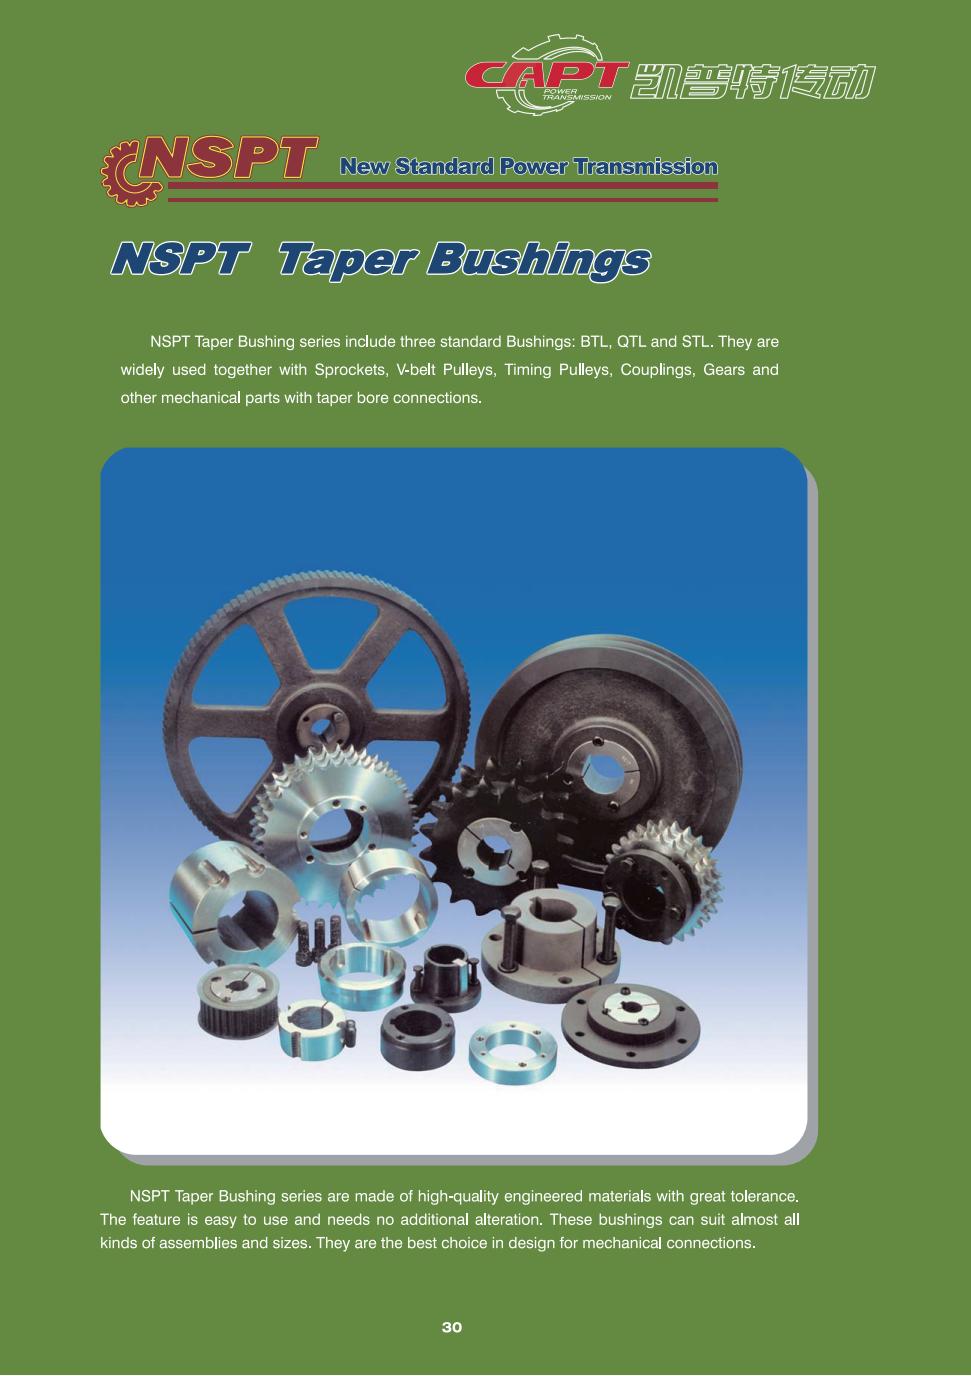 2-NSPT Taper Bushings